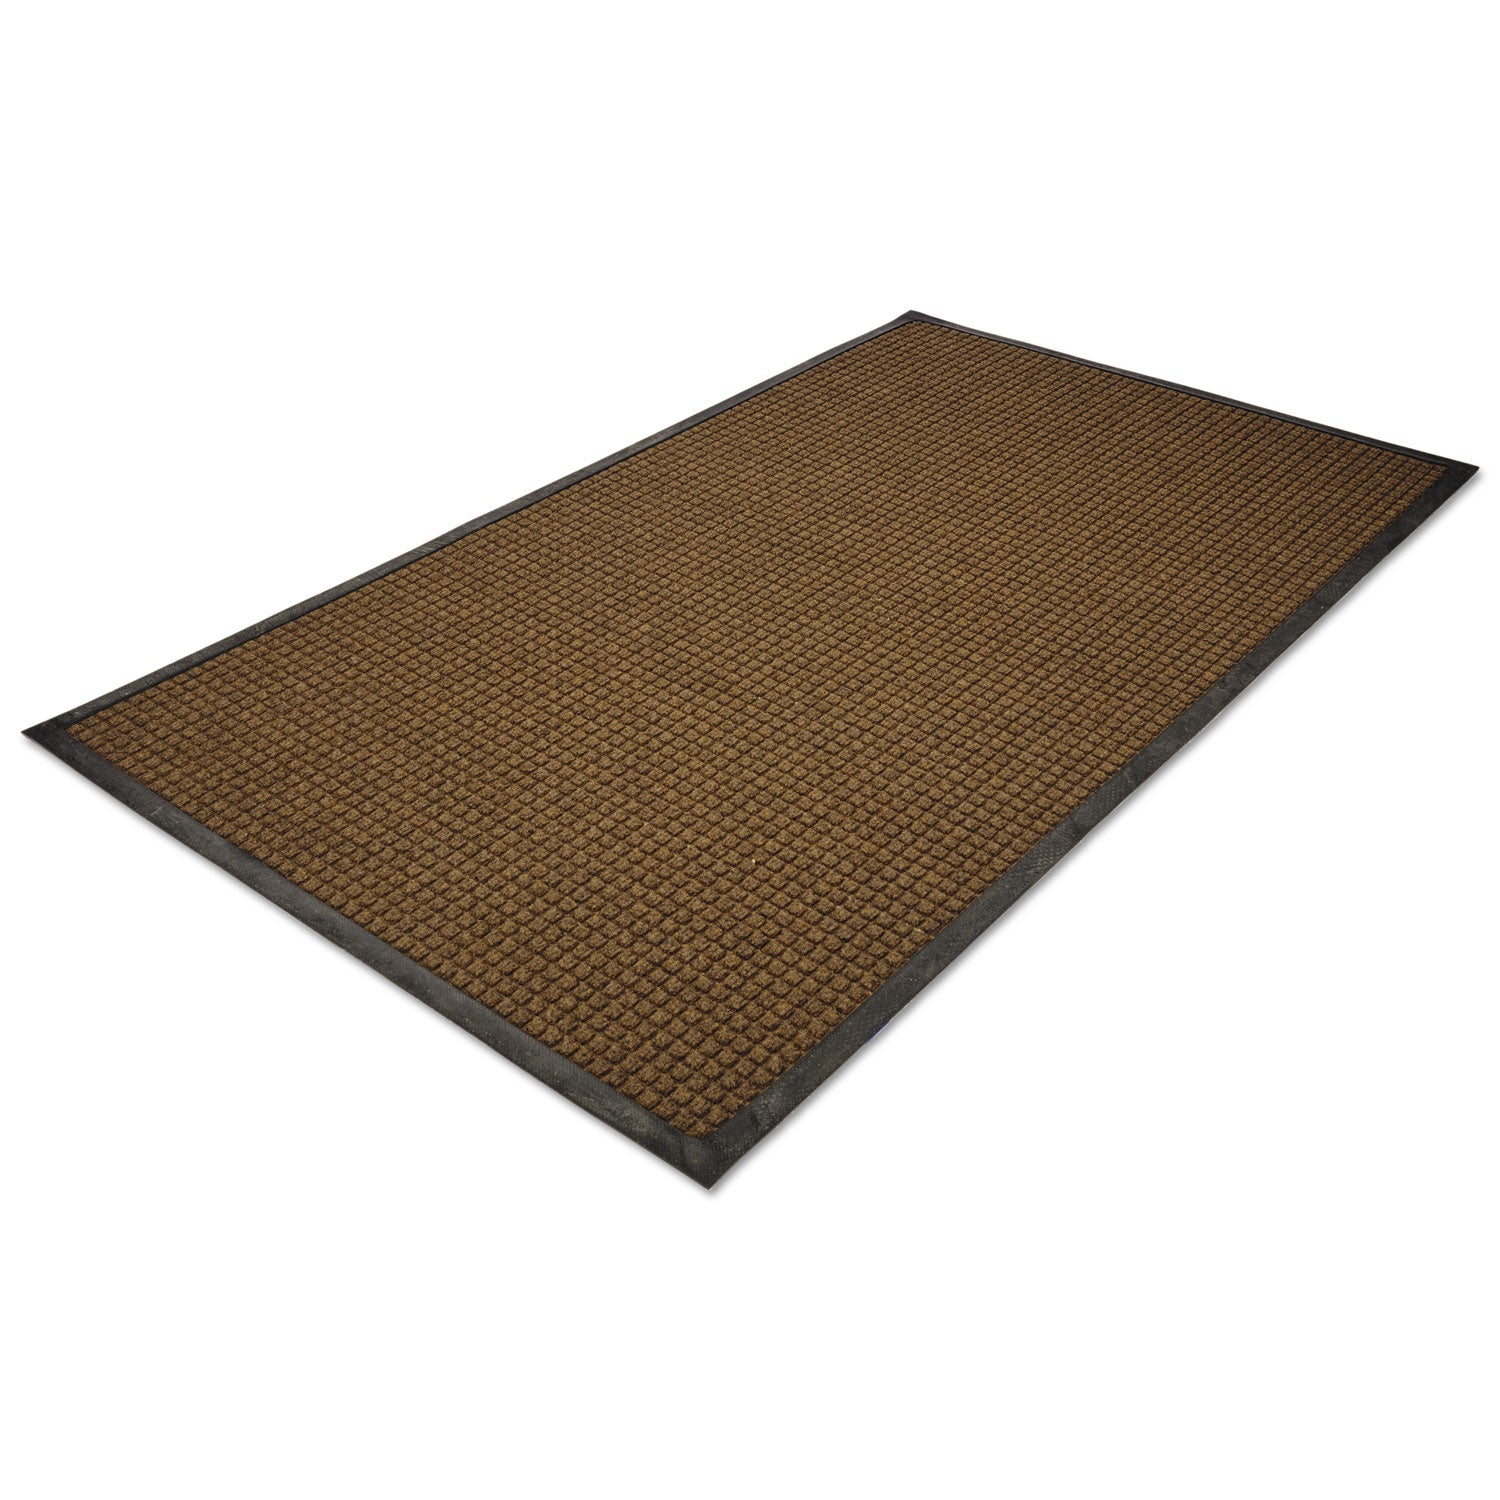 WaterGuard Indoor/Outdoor Scraper Mat, 36 x 120, Brown - 